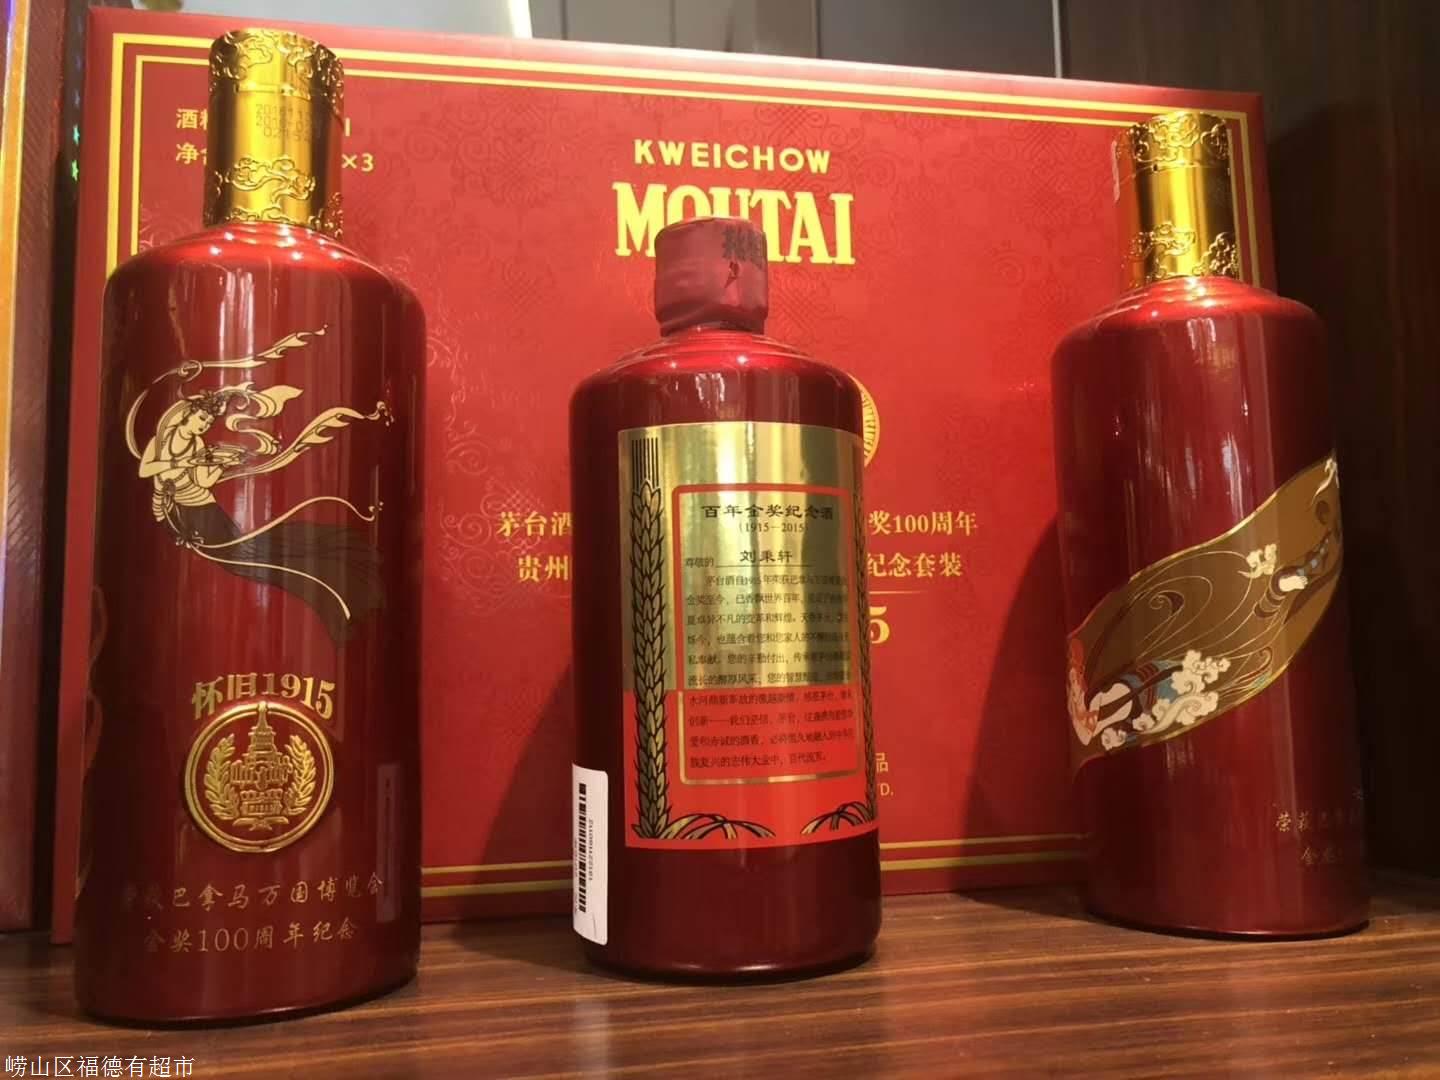 上海回收中央警卫局茅台酒正规